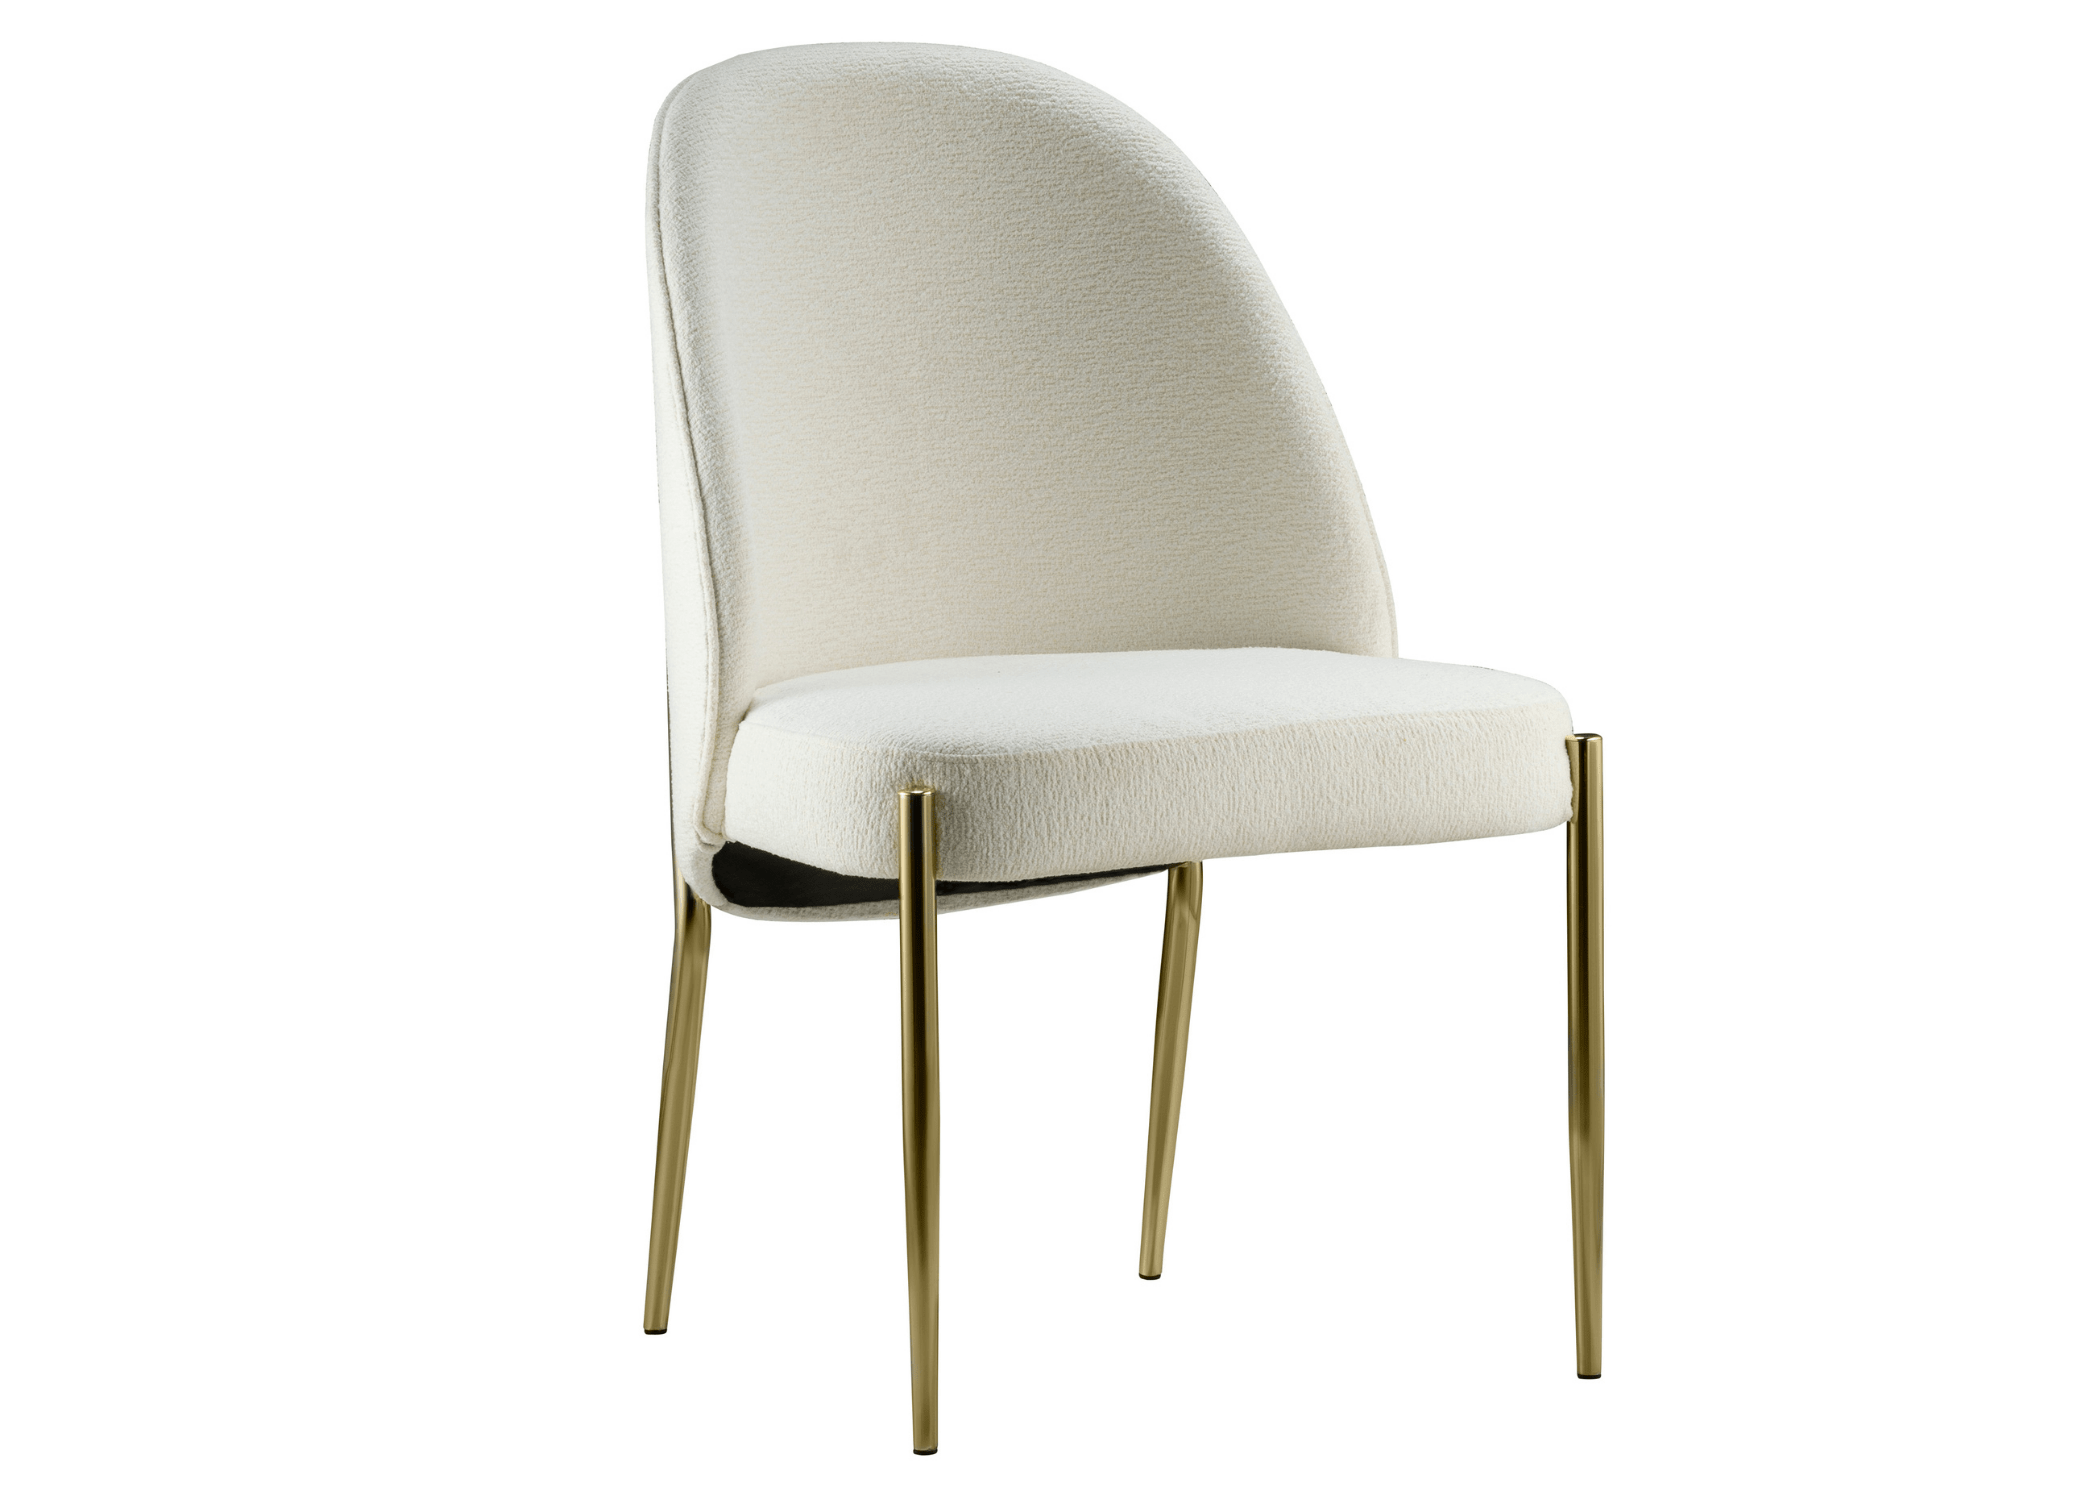 A Cadeira Córdova é um exemplo perfeito de design simples e elegante.